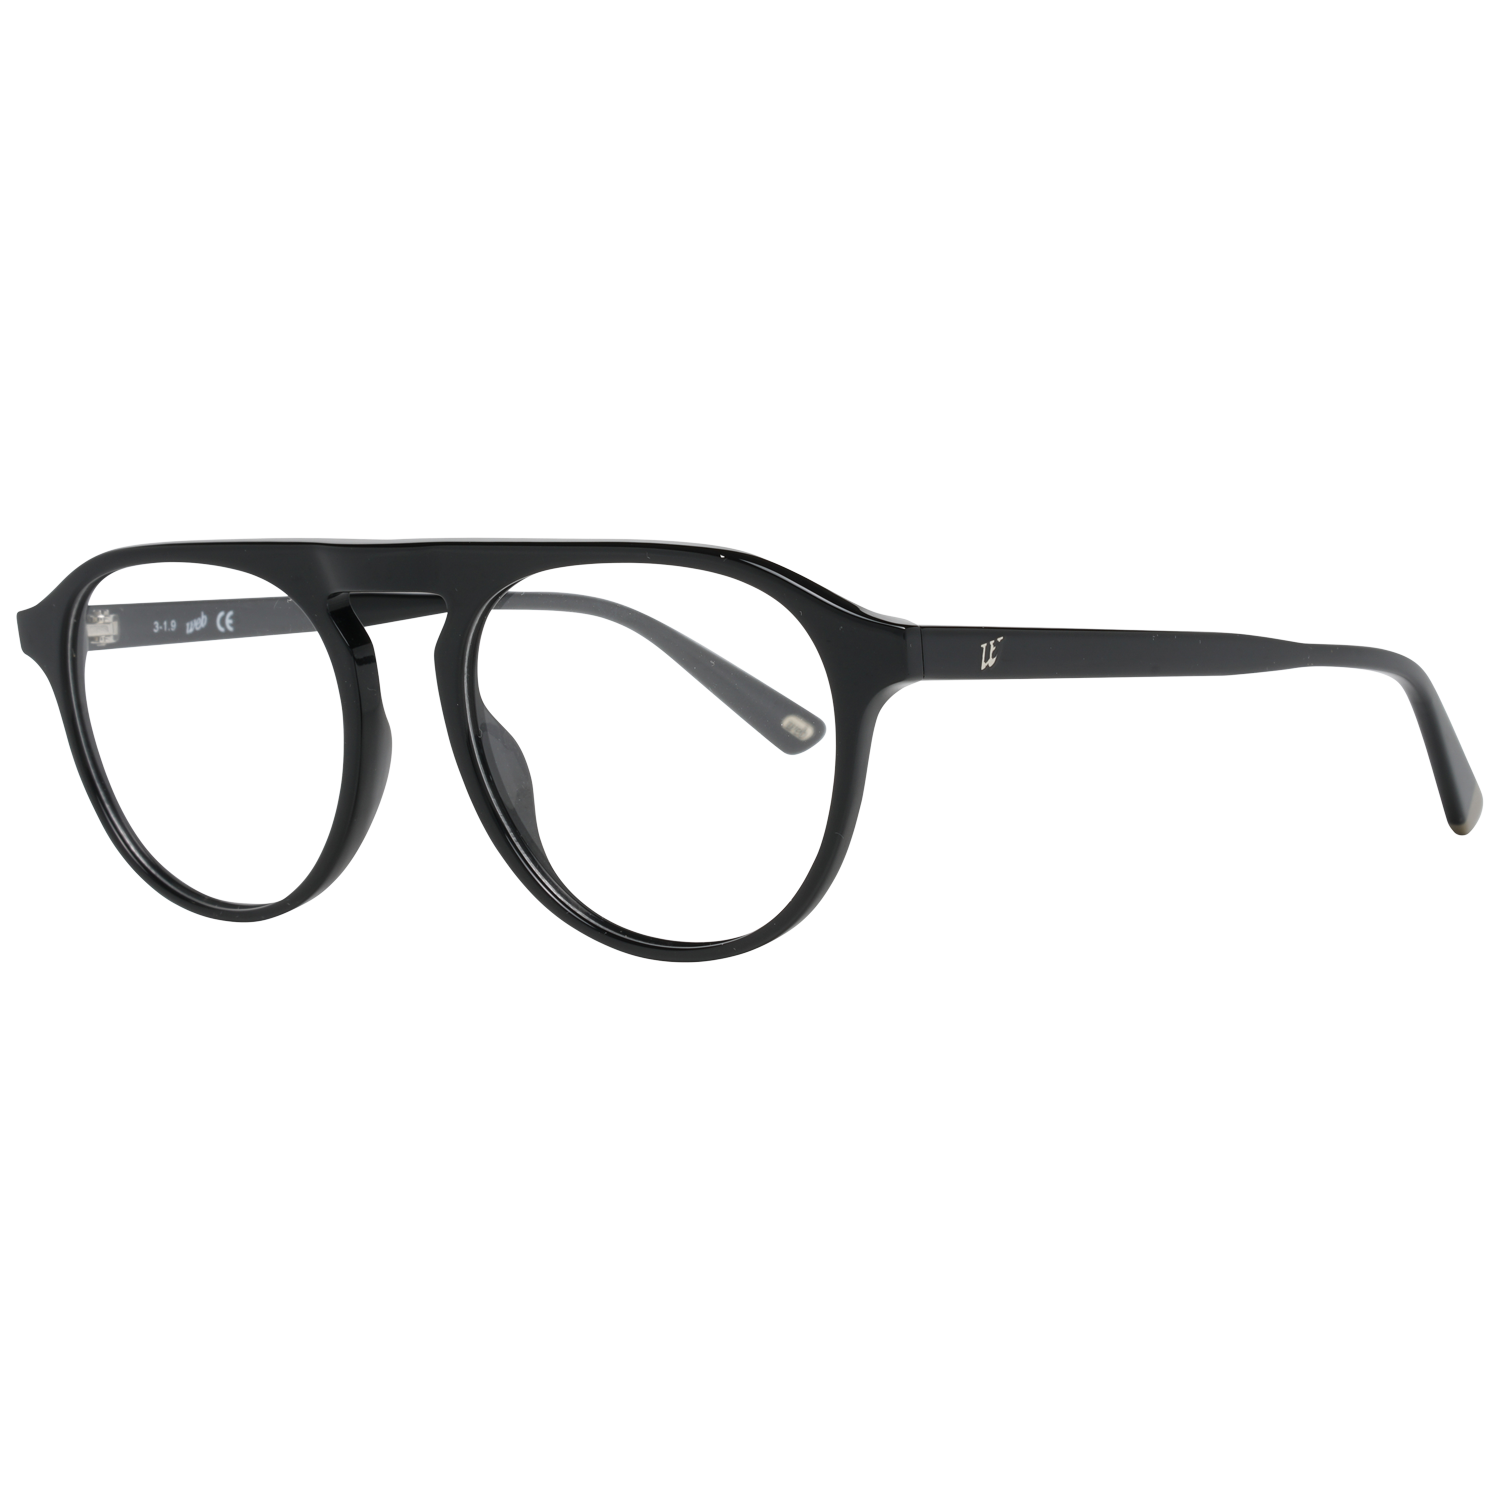 Web Frames Web Optical Frame WE5290 001 52 Eyeglasses Eyewear UK USA Australia 